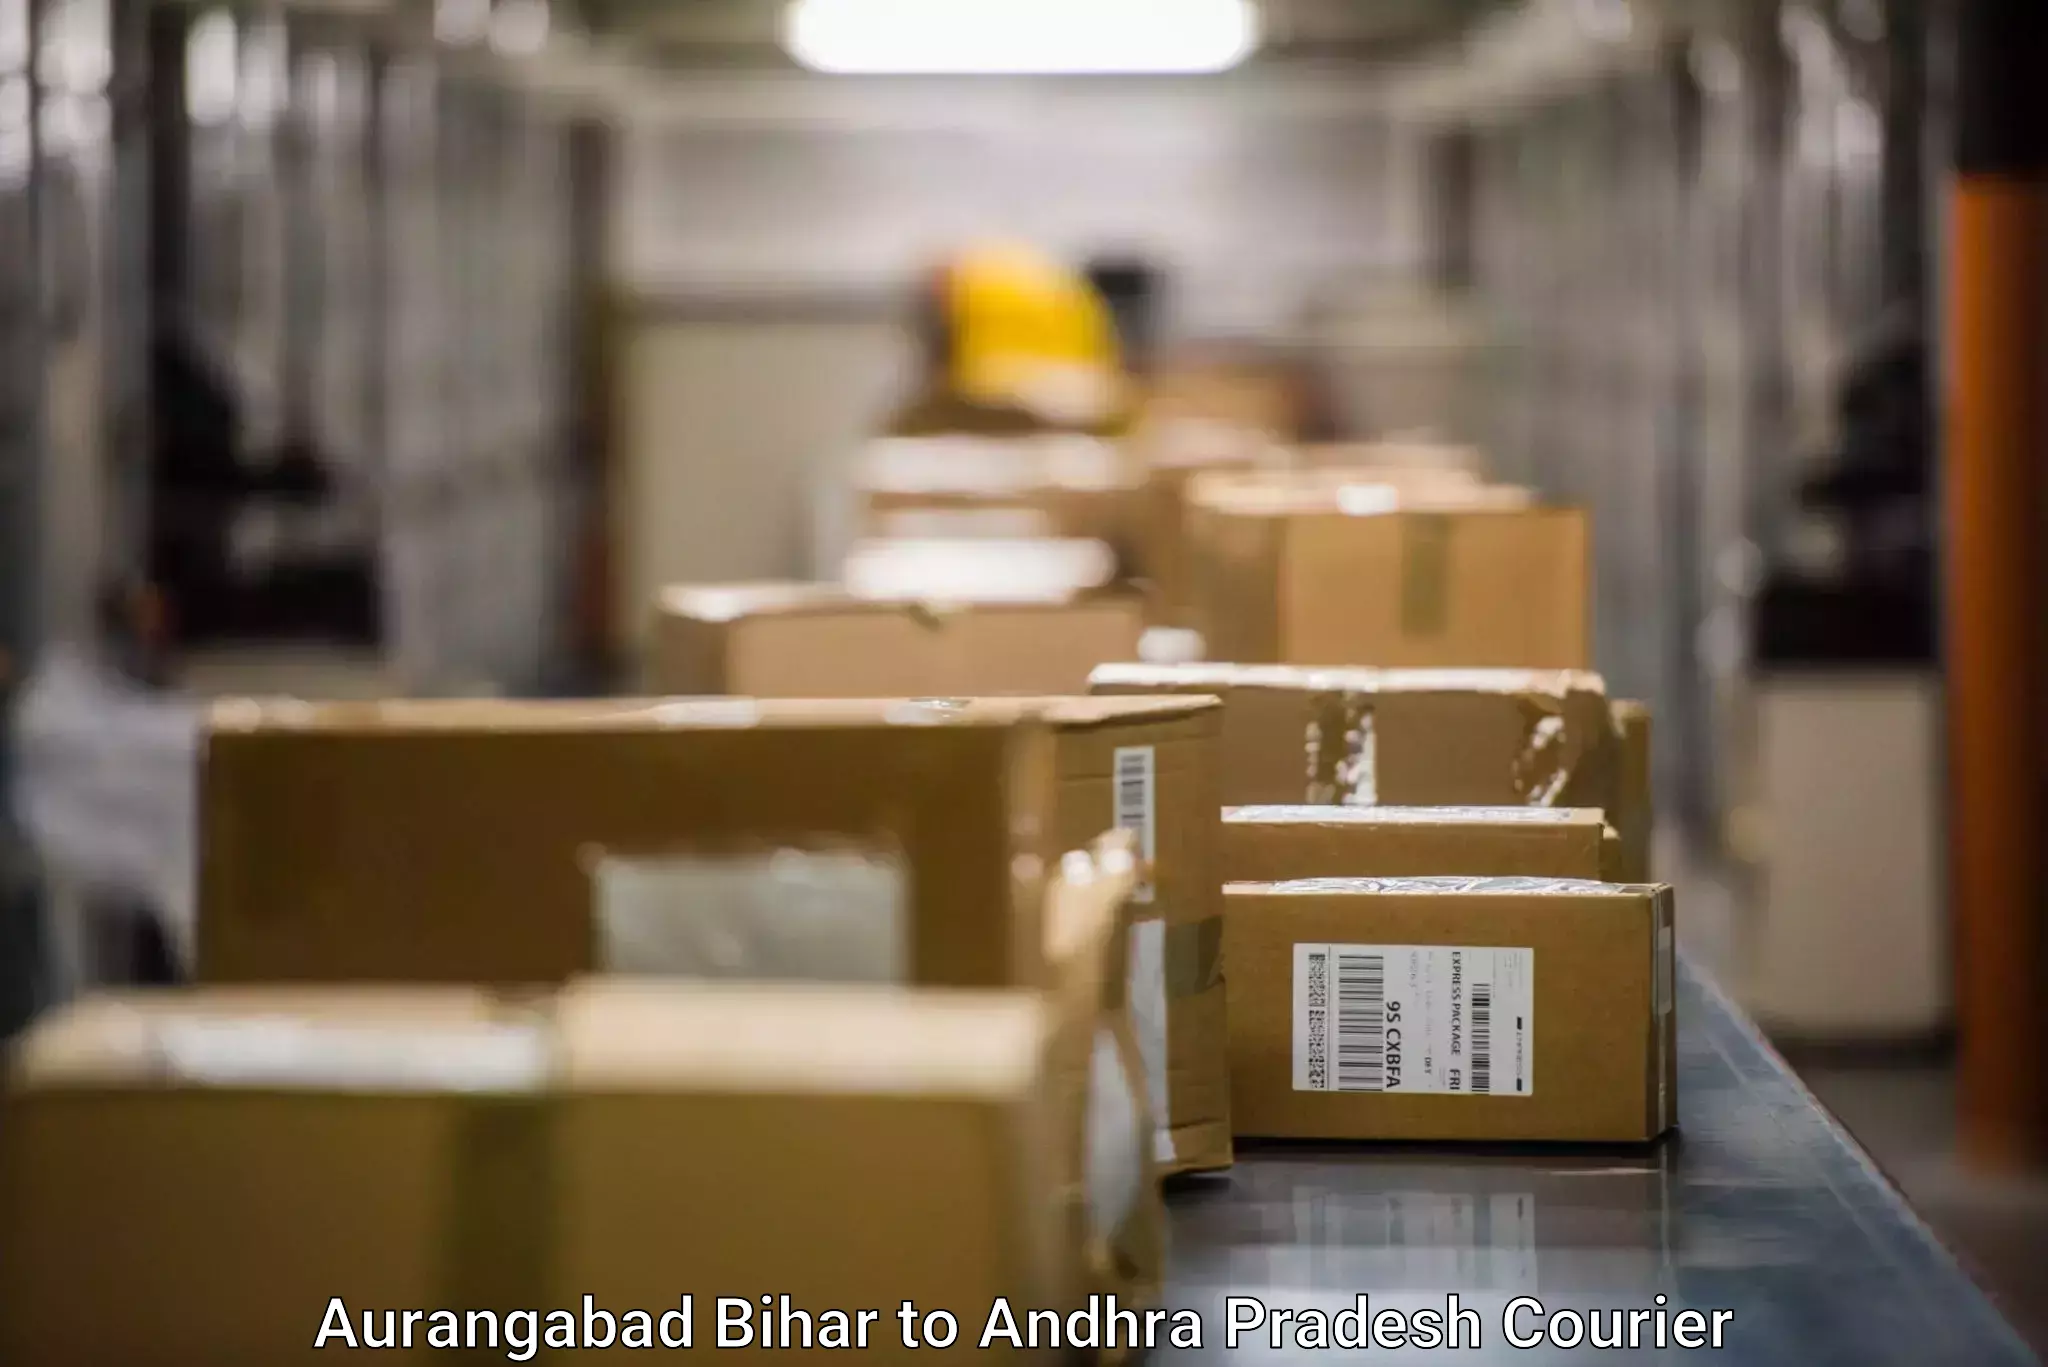 Smart shipping technology Aurangabad Bihar to Pedabayalu